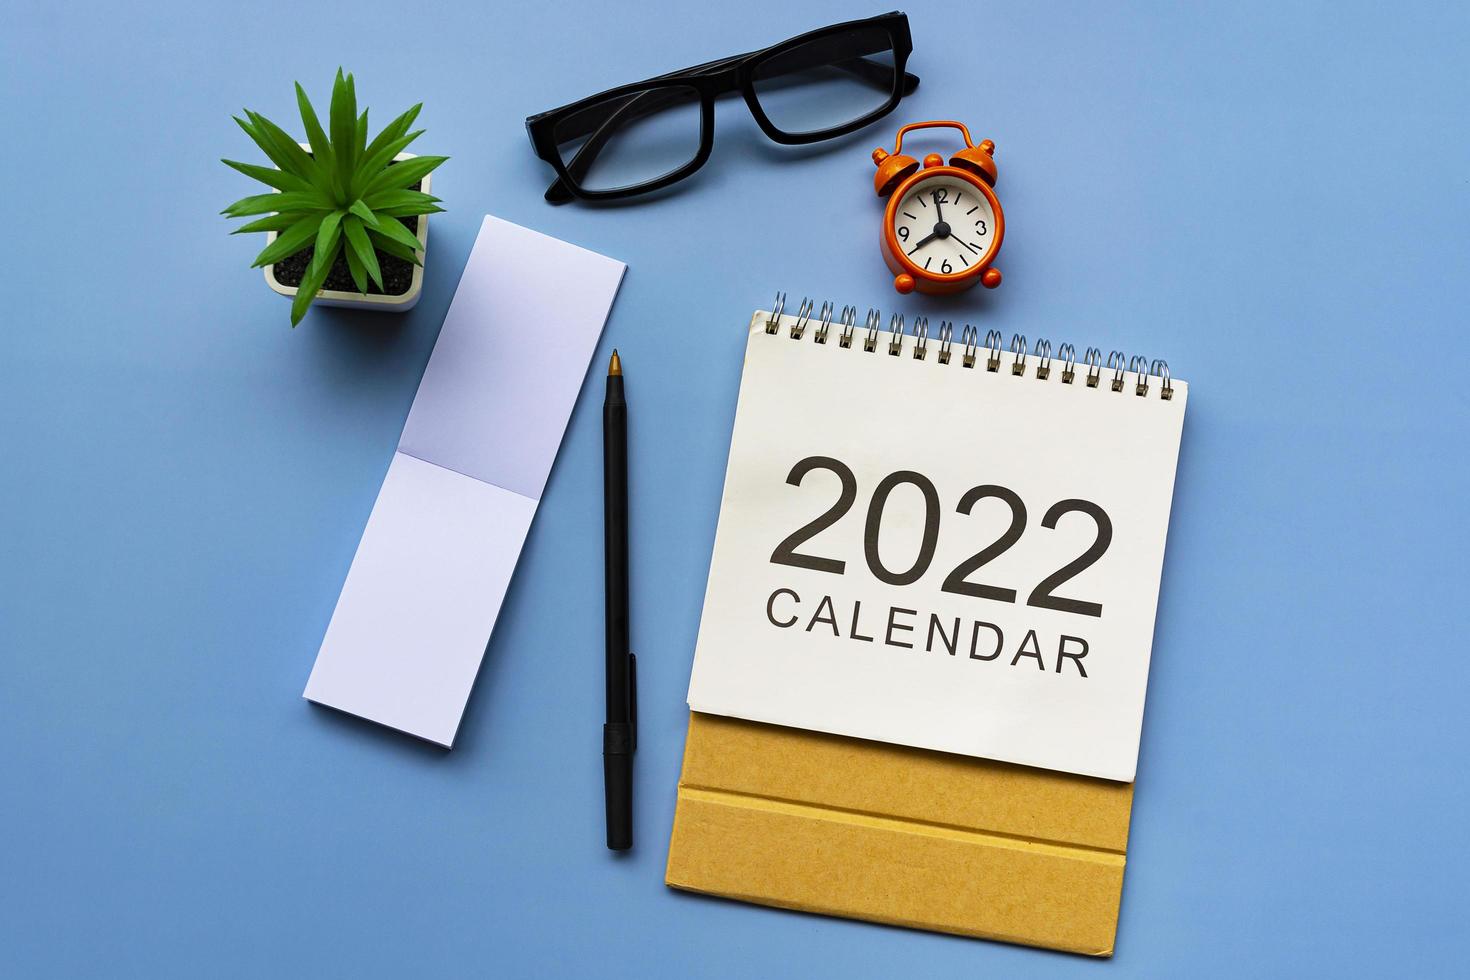 bloco de notas com calendário 2022, óculos, caneta, vaso de plantas e despertador. foto